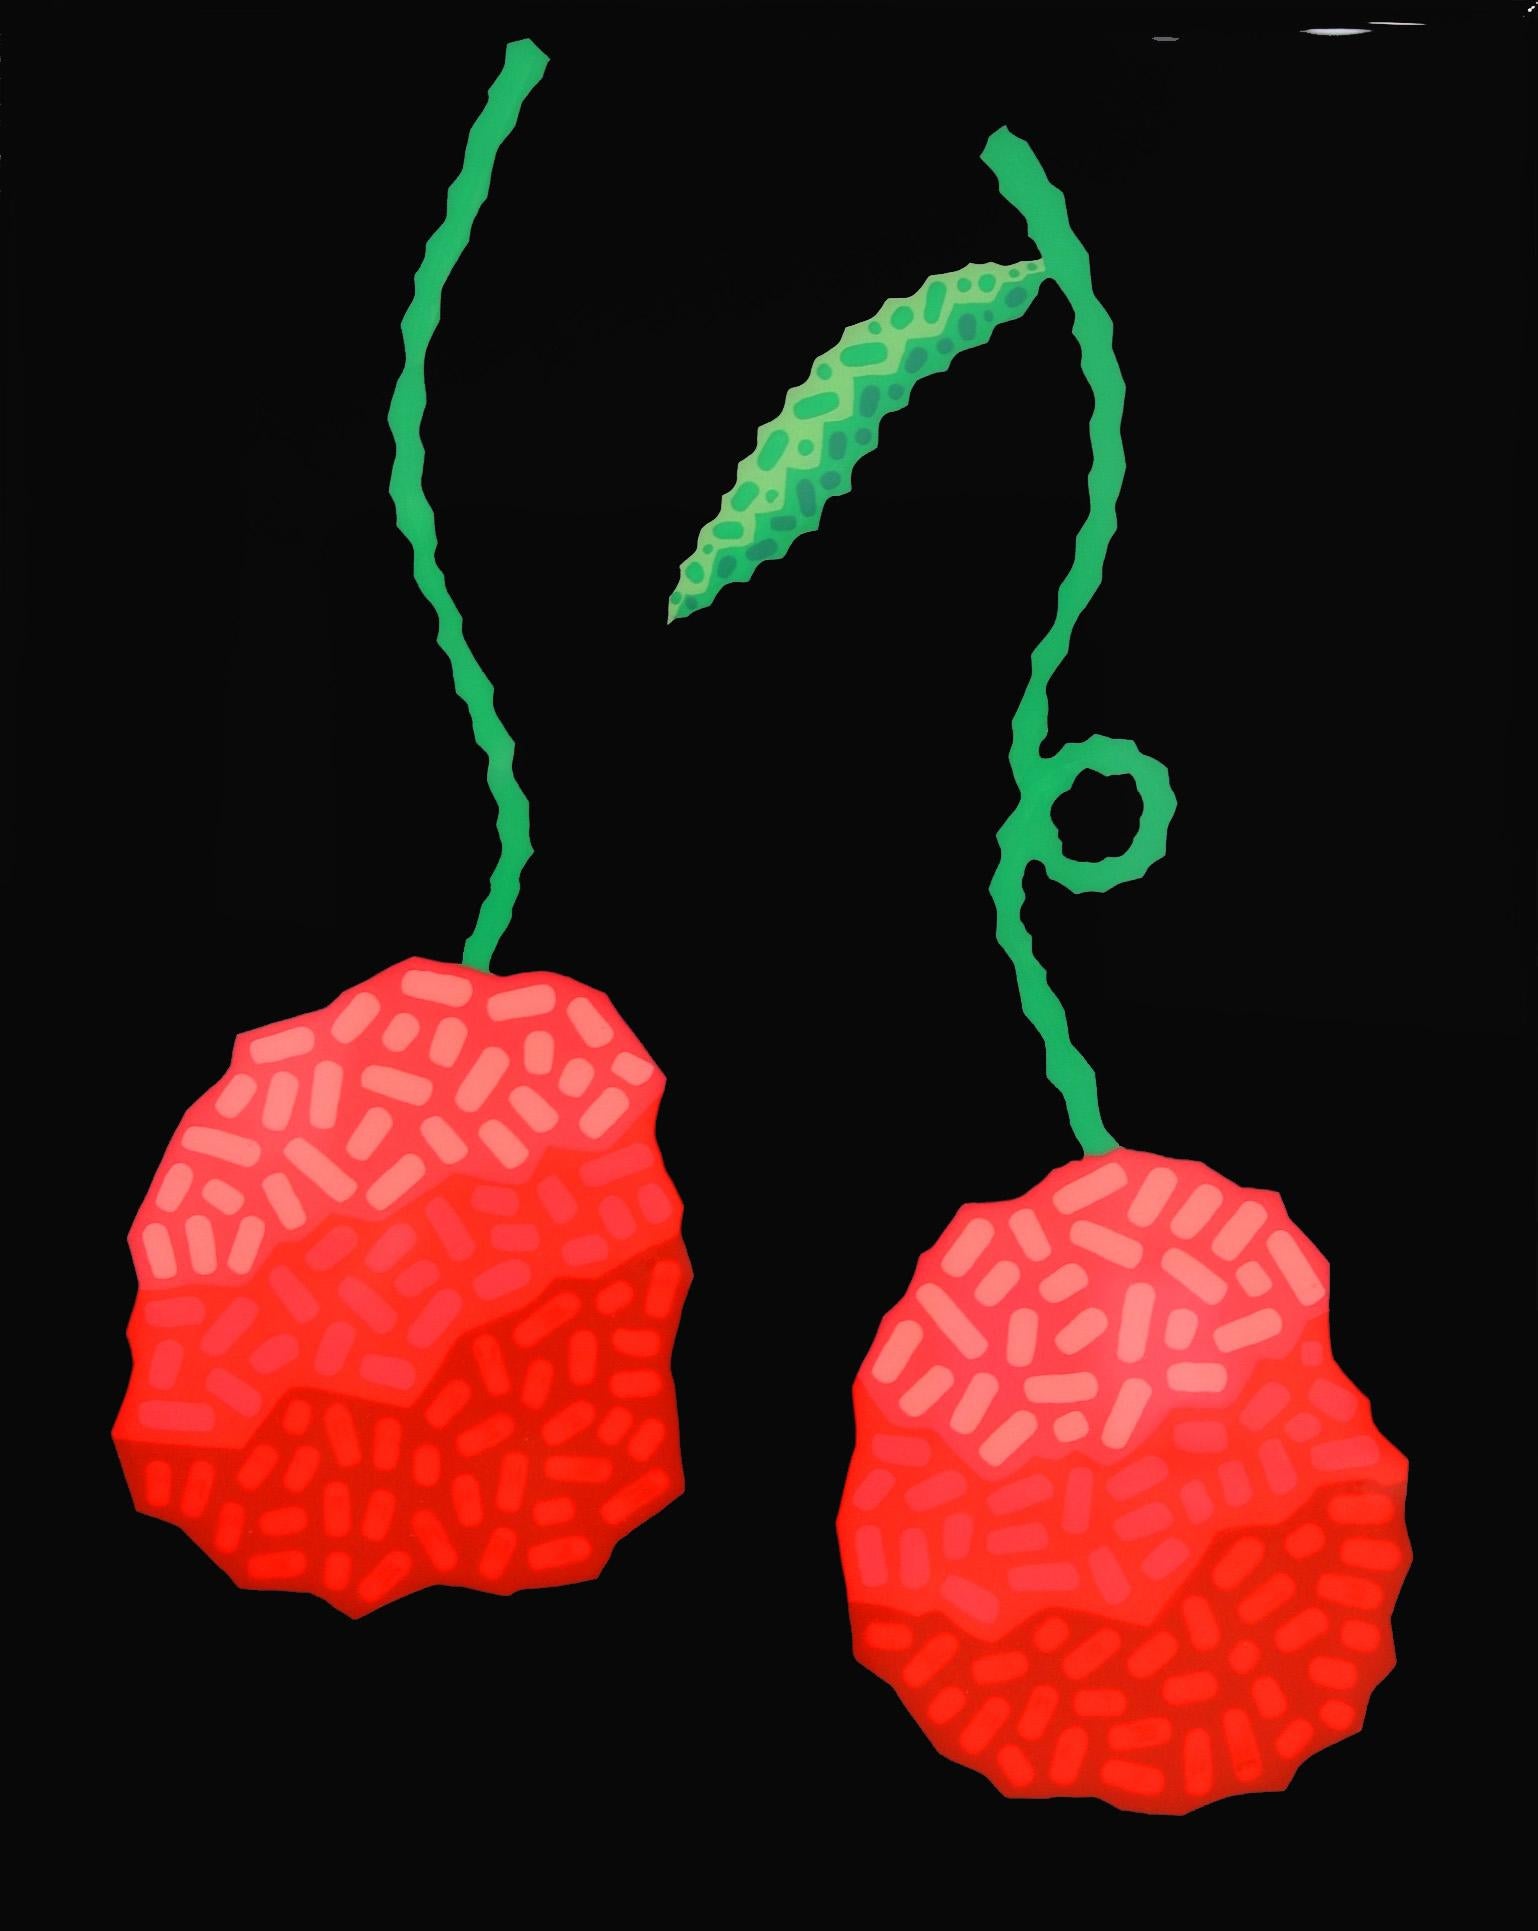 Will Beger Abstract Painting – Schwarze Kirschen – lebhafte rote Obst, Südwestlich inspiriertes Pop-Art-Gemälde